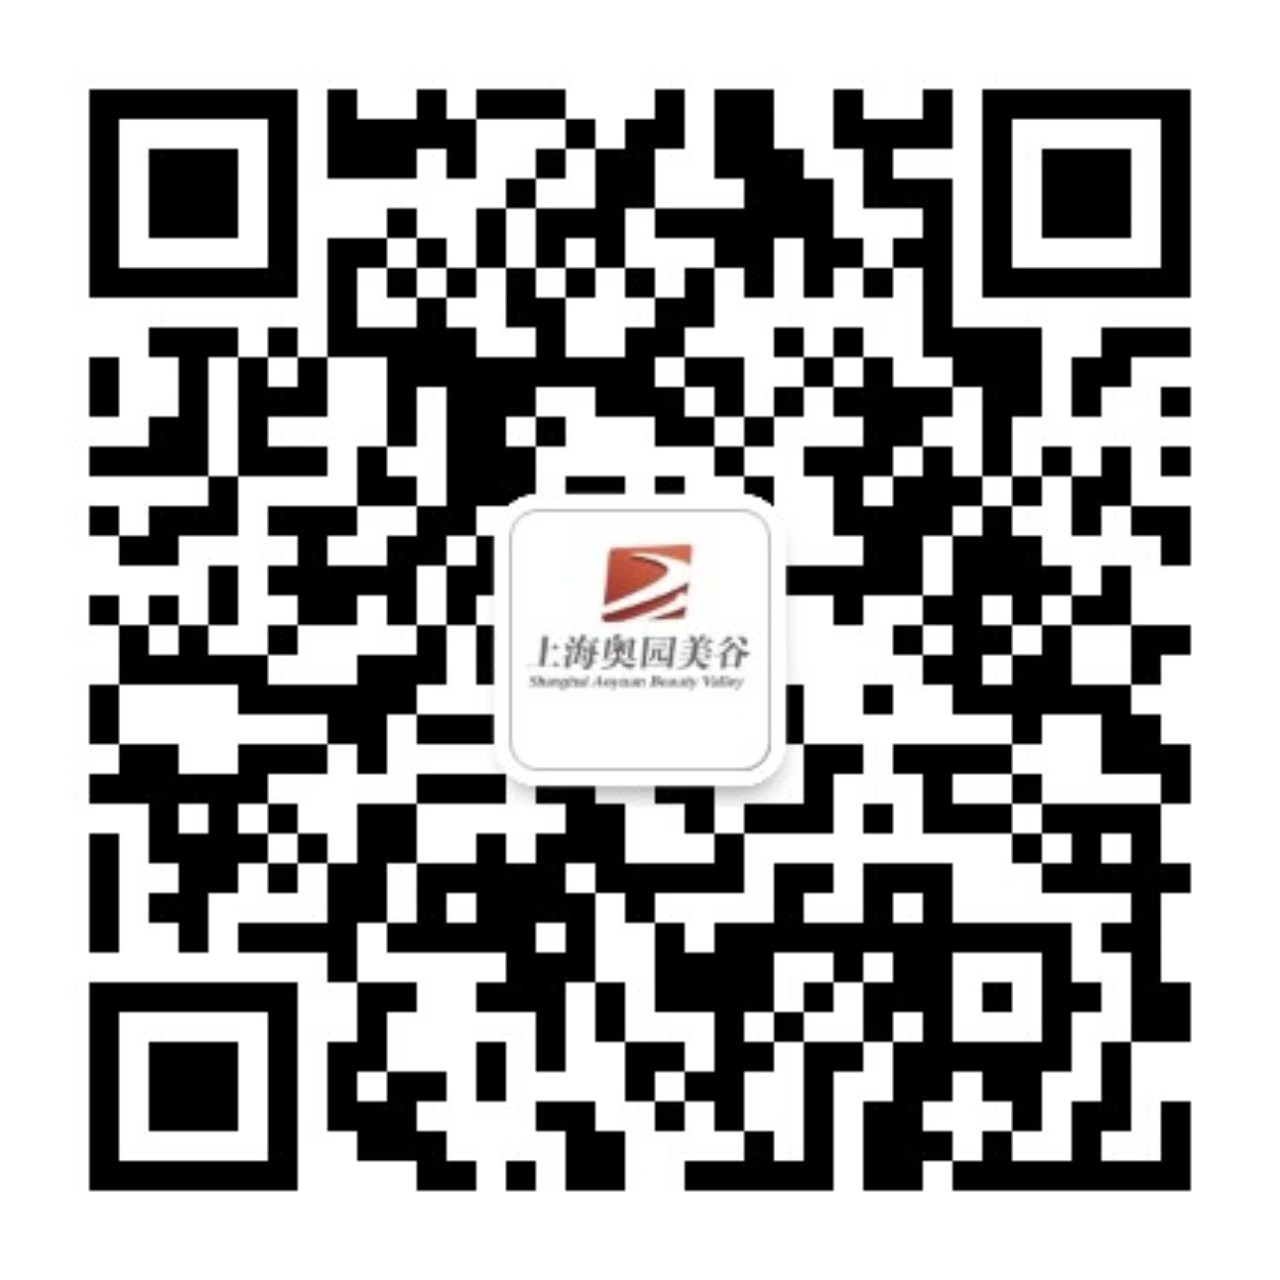 上海bob体育官方
<br>微信订阅号